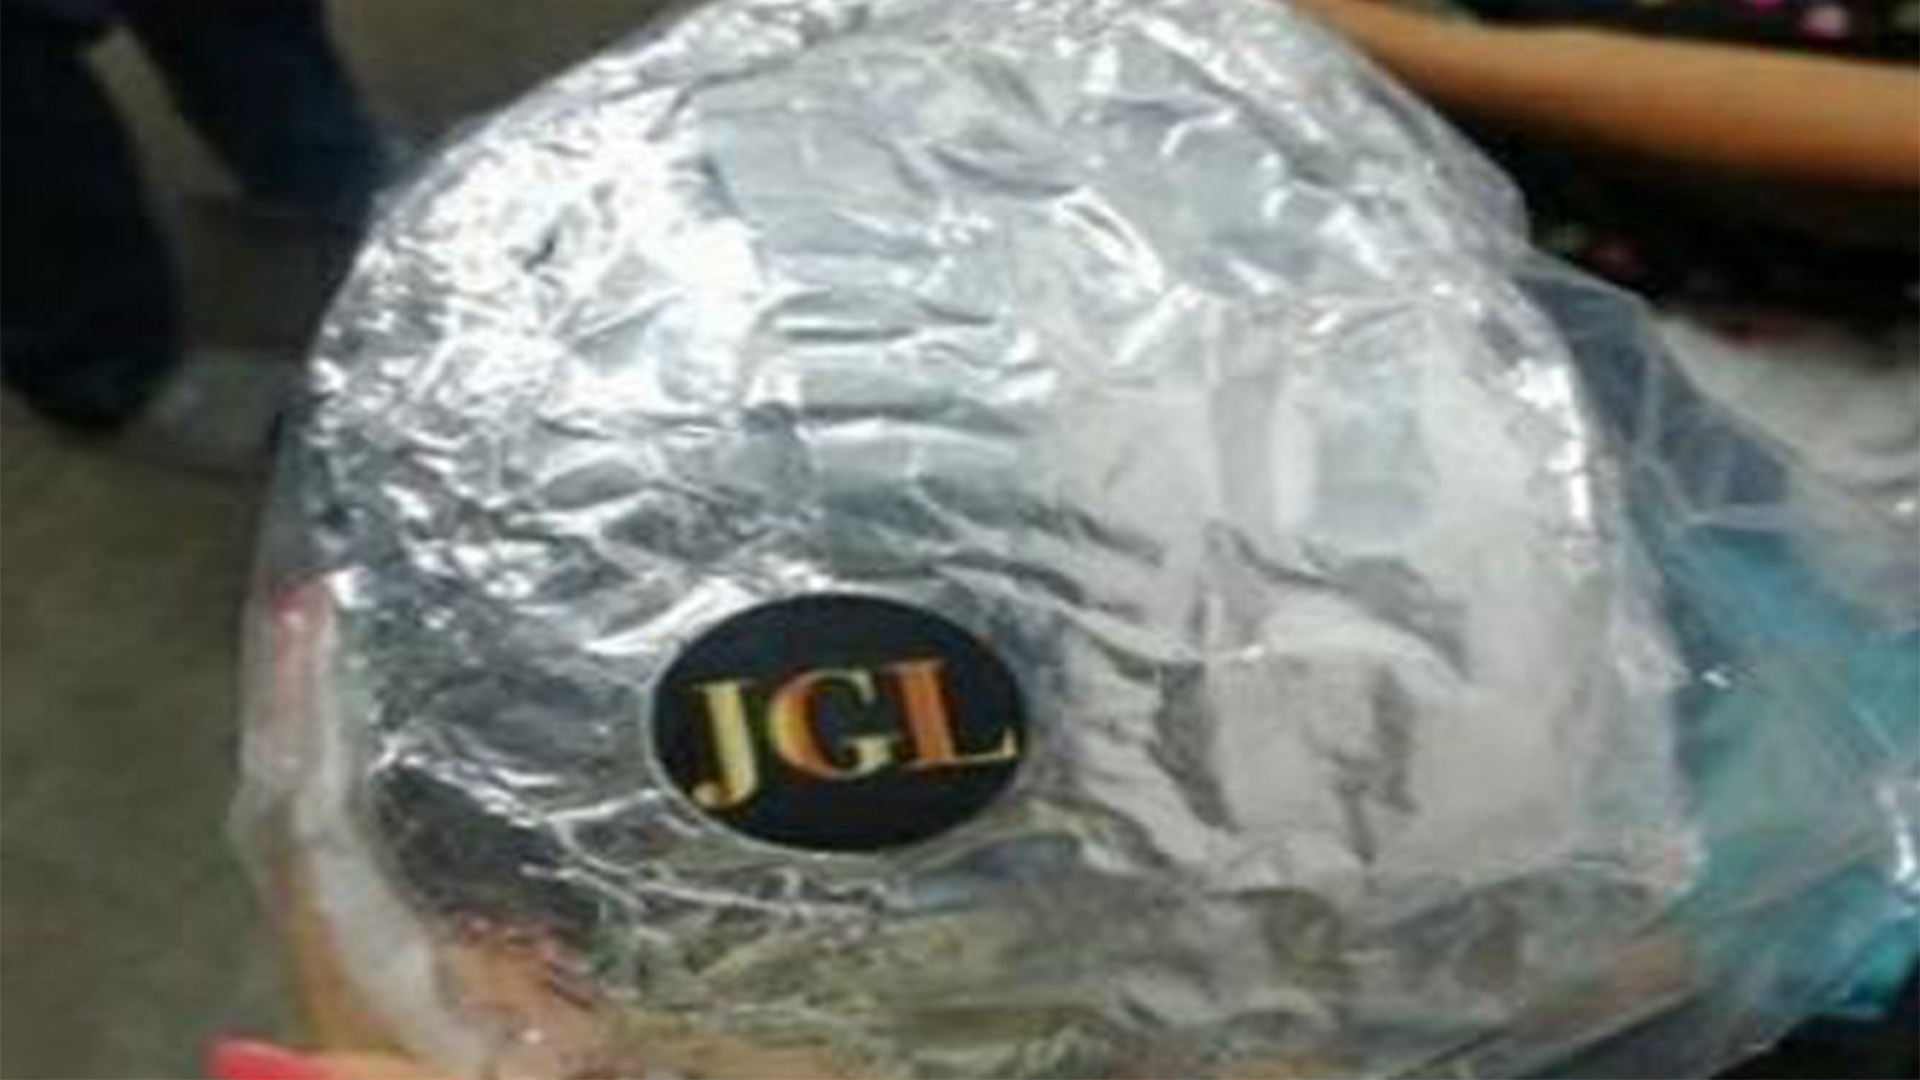 Envueltas en papel aluminio y dentro de una bolsa de plástico, tenían las letras “JGL”, siglas de Joaquín Guzmán Loera, estampadas (Foto: Twitter@SoySalmon76)